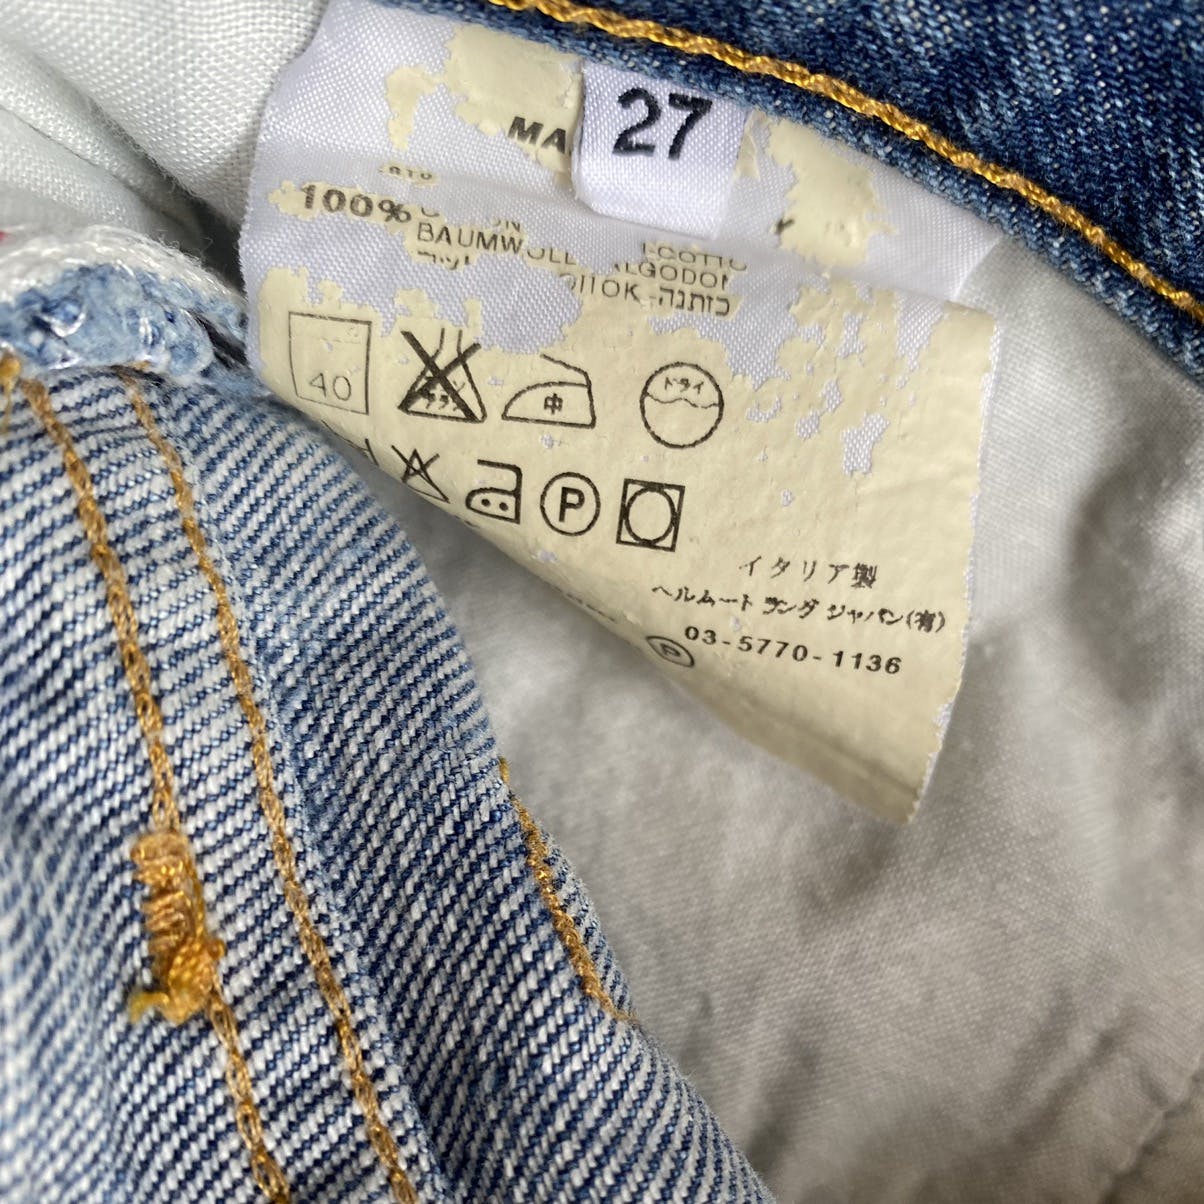 ☆良品 ヘルムートラング 本人期 ストレートデニム パンツ 濃紺 イタリア製約25cm裾幅